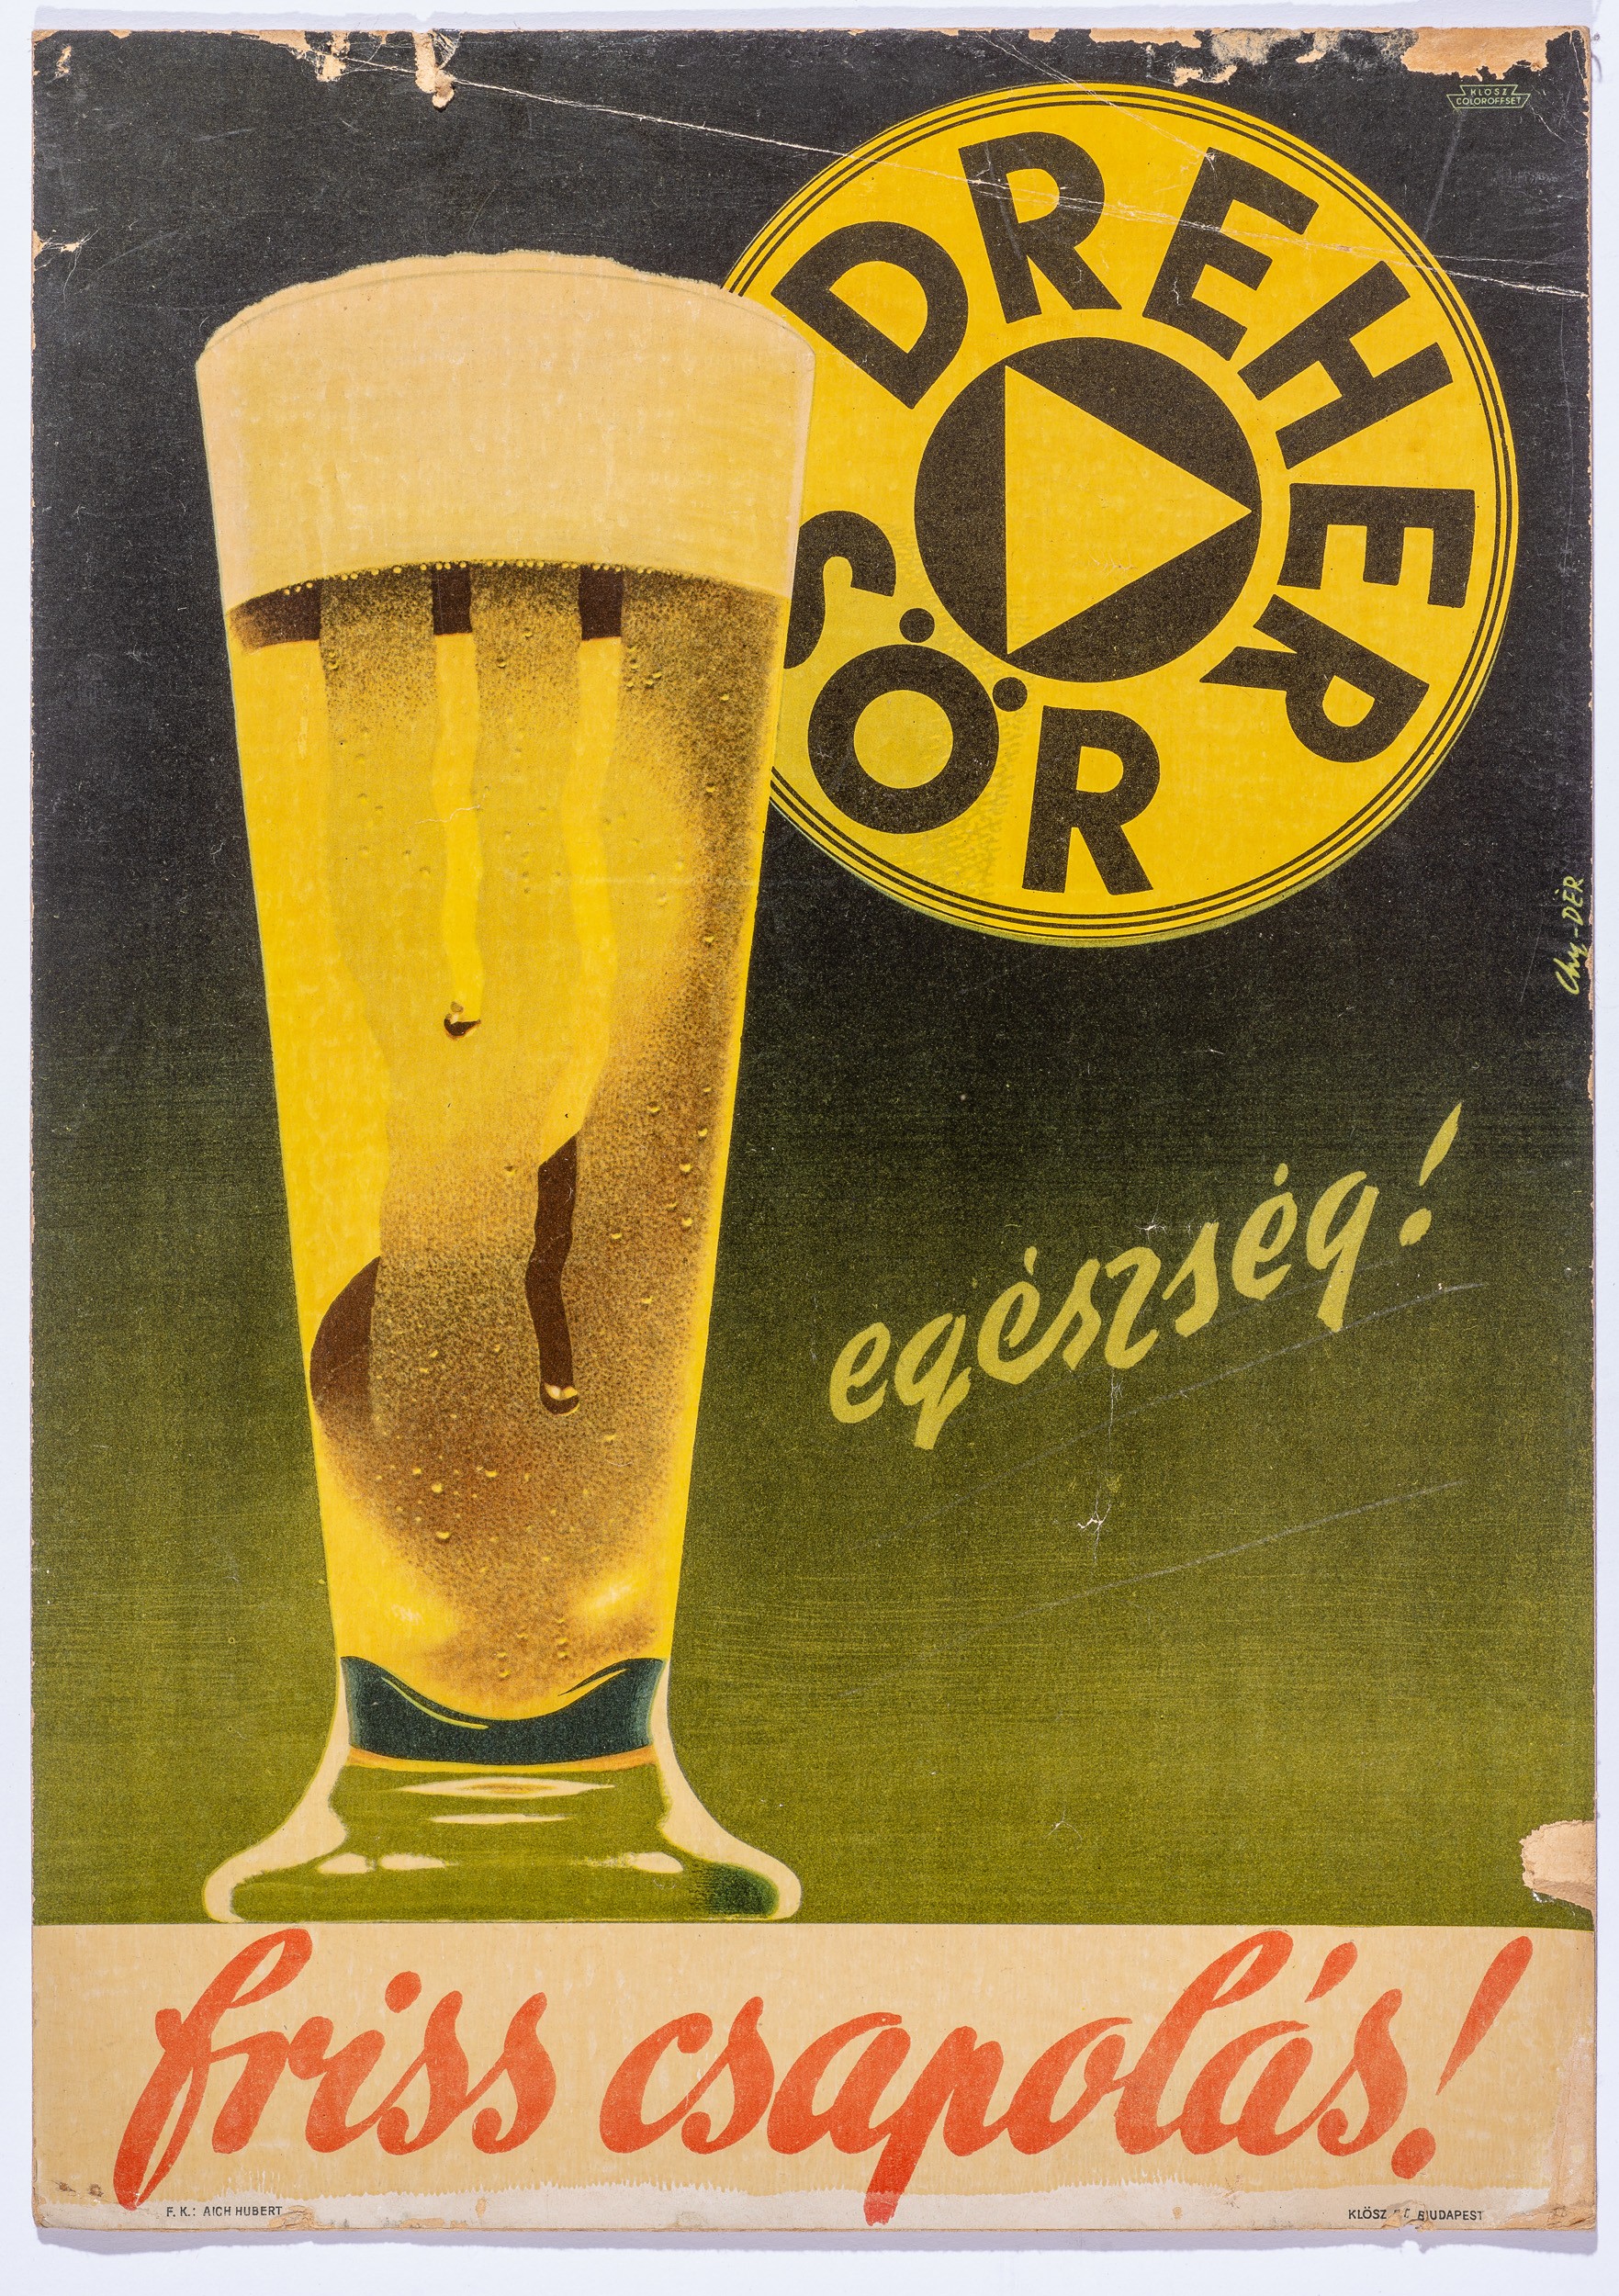 Dreher sör,egészség,f.csap.,plak. (Söripari Emléktár - Dreher Sörmúzeum CC BY-NC-SA)